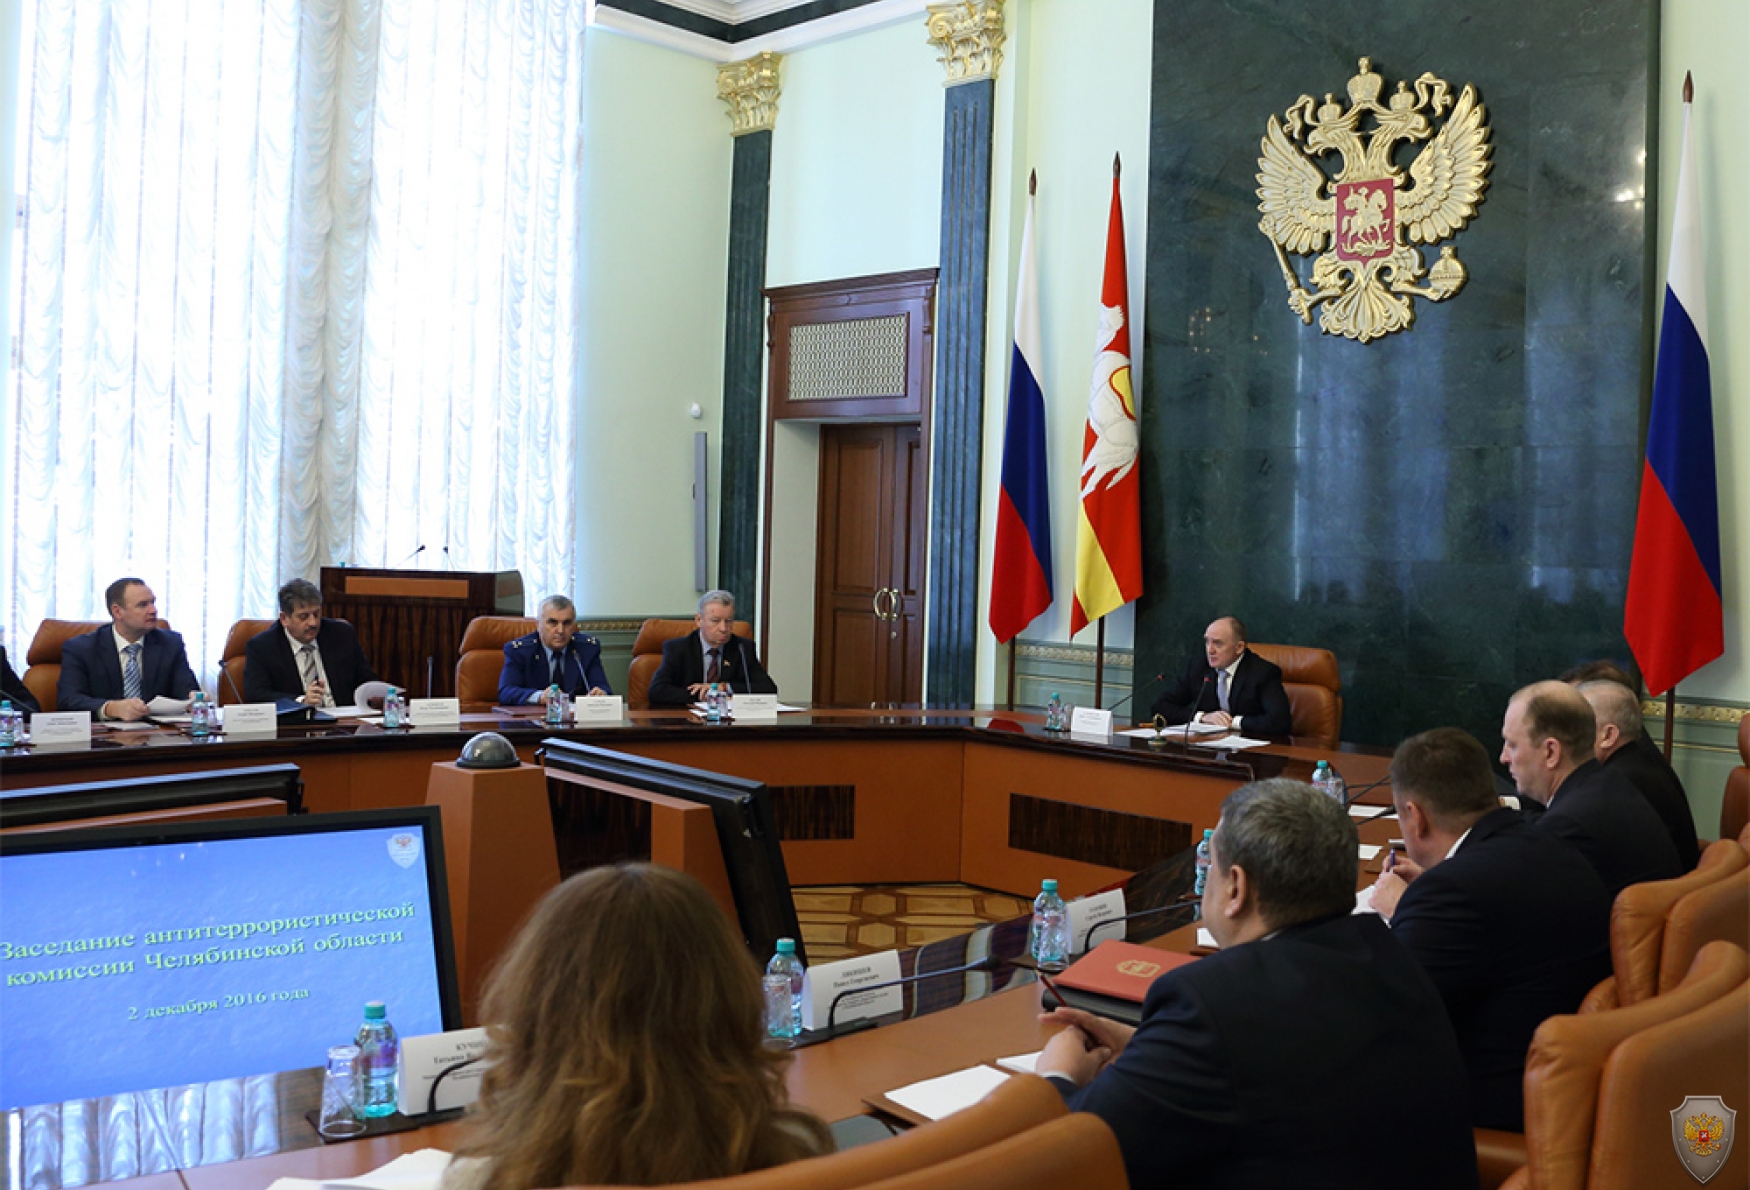 Общий вид зала заседаний Правительства Челябинской области в процессе работы Комиссии 